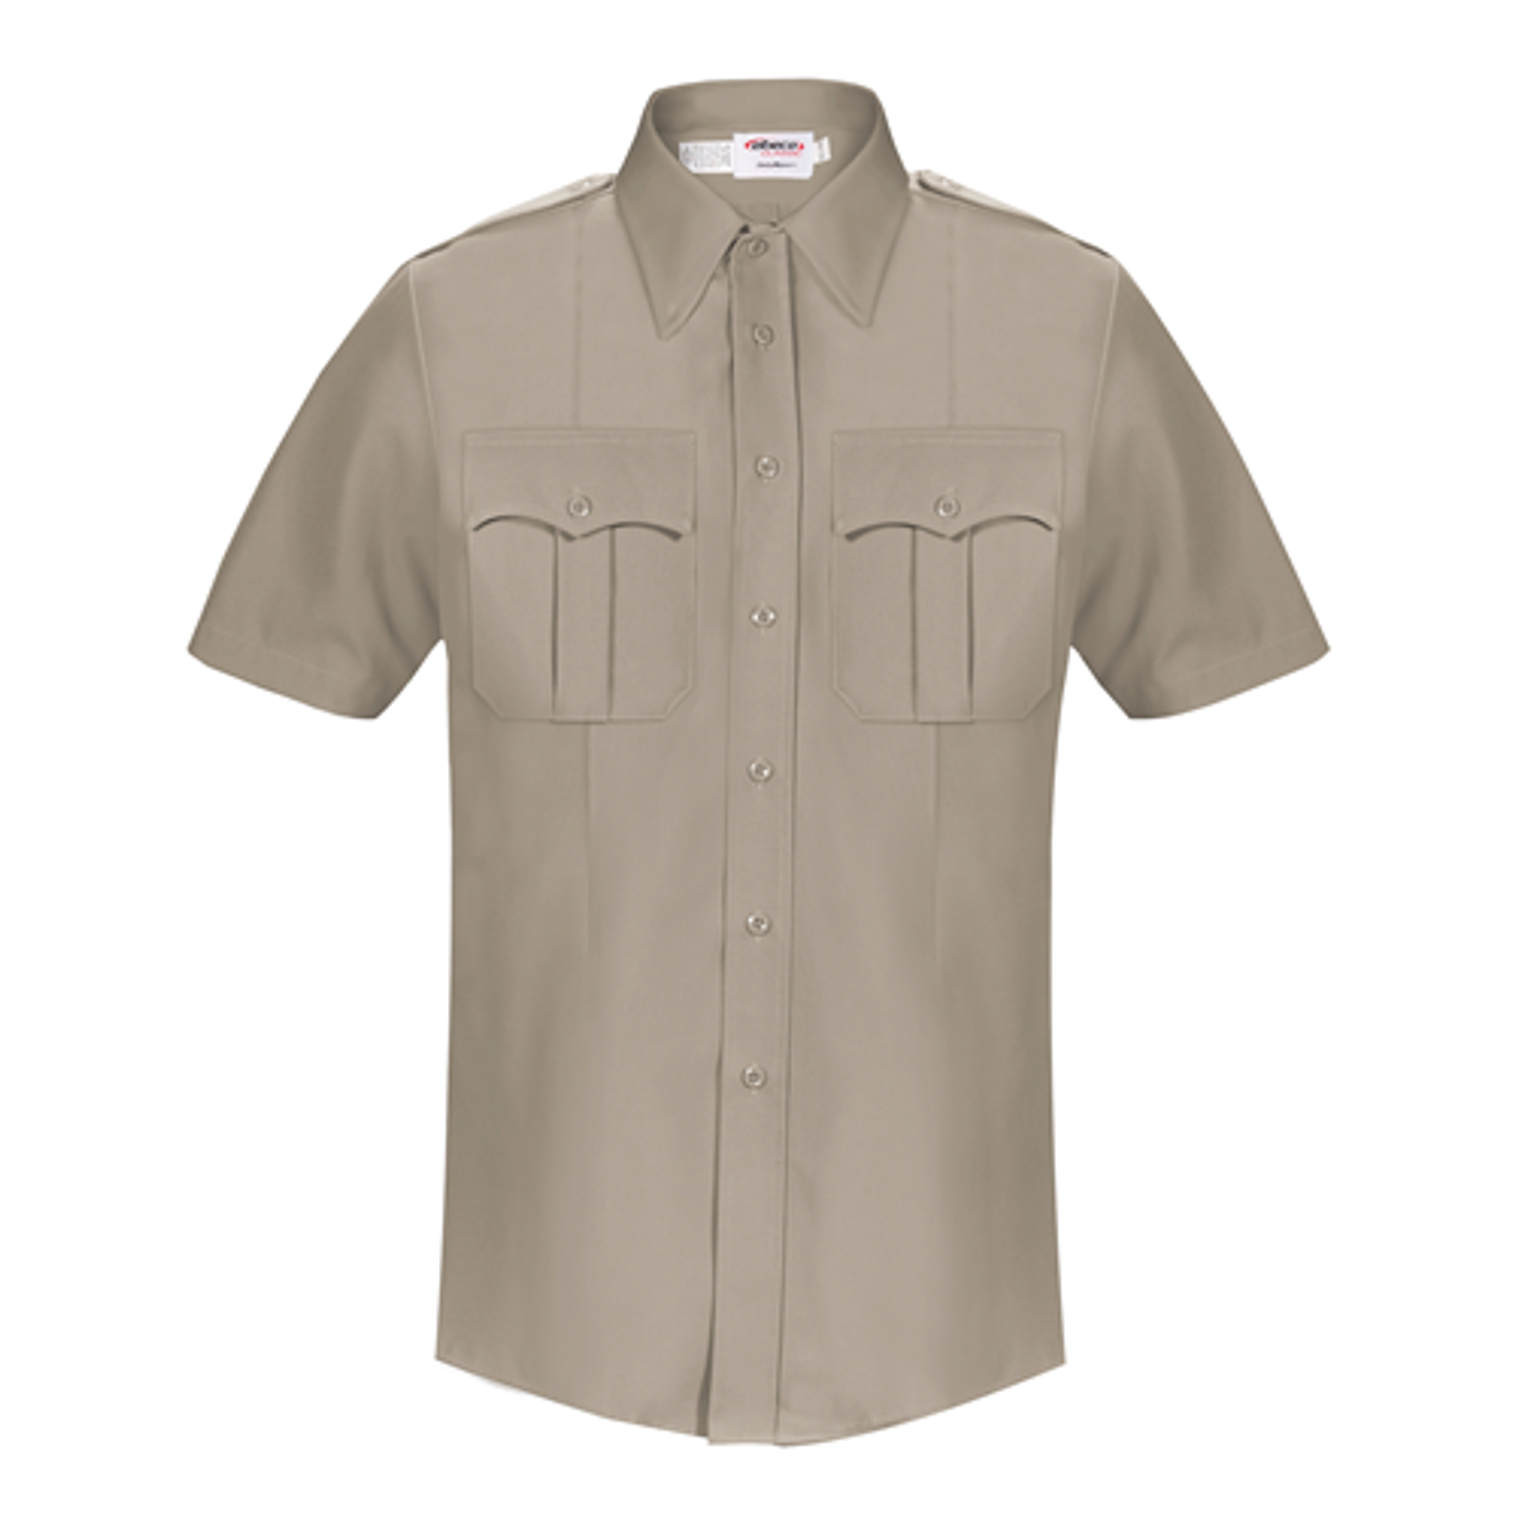 Dutymaxx Short Sleeve Shirt - KRELB-5582D-17